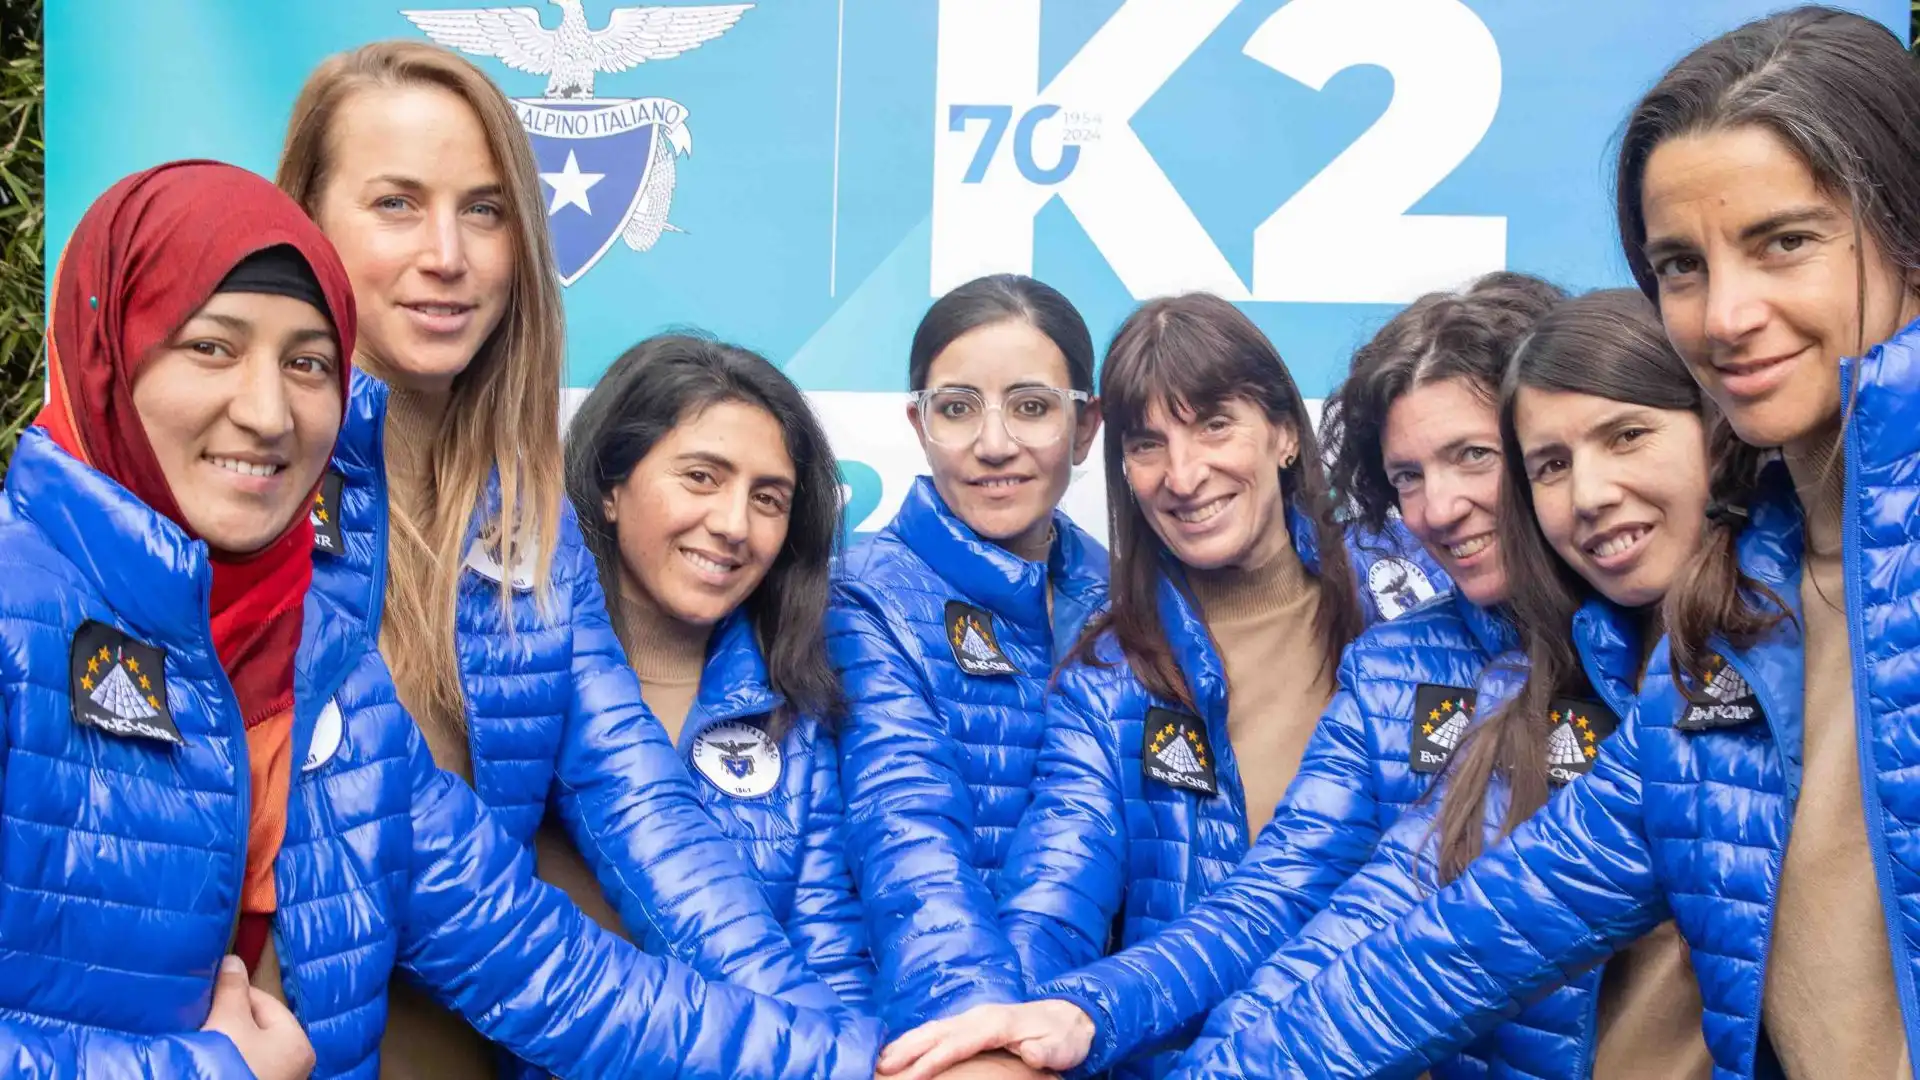 Si è svolta presso il Boga Space, la conferenza stampa per presentare il progetto K2-70, che segna la prima spedizione femminile italiana e pakistana sul K2.